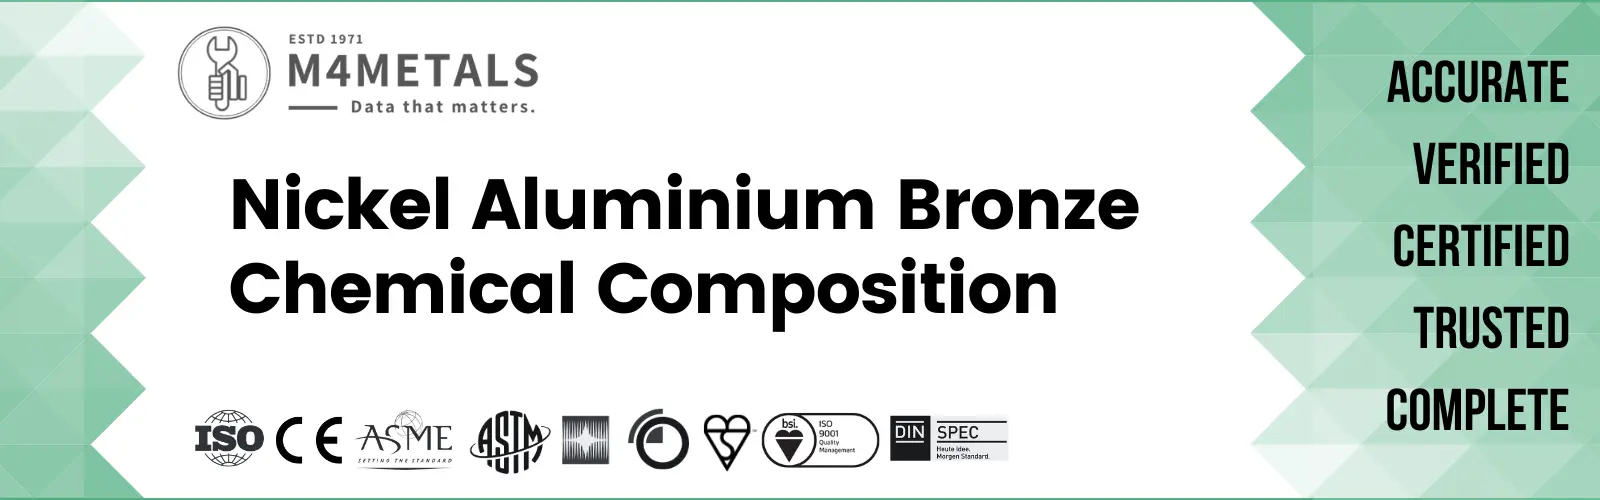 Nickel Aluminium Bronze Chemical Composition